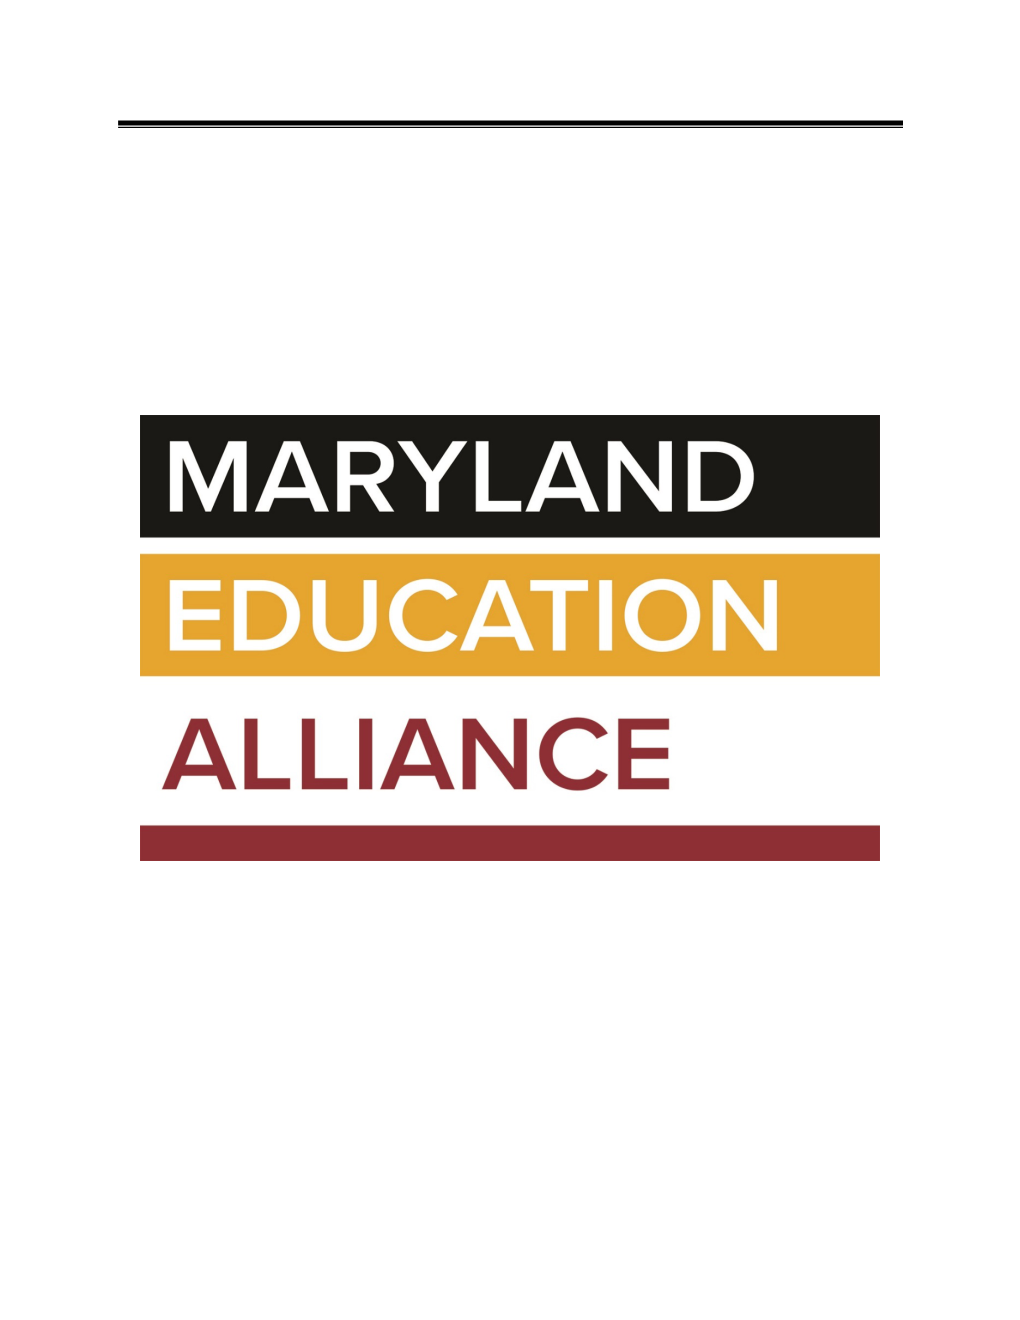 Chesapeake Area Consortium for Higher Education